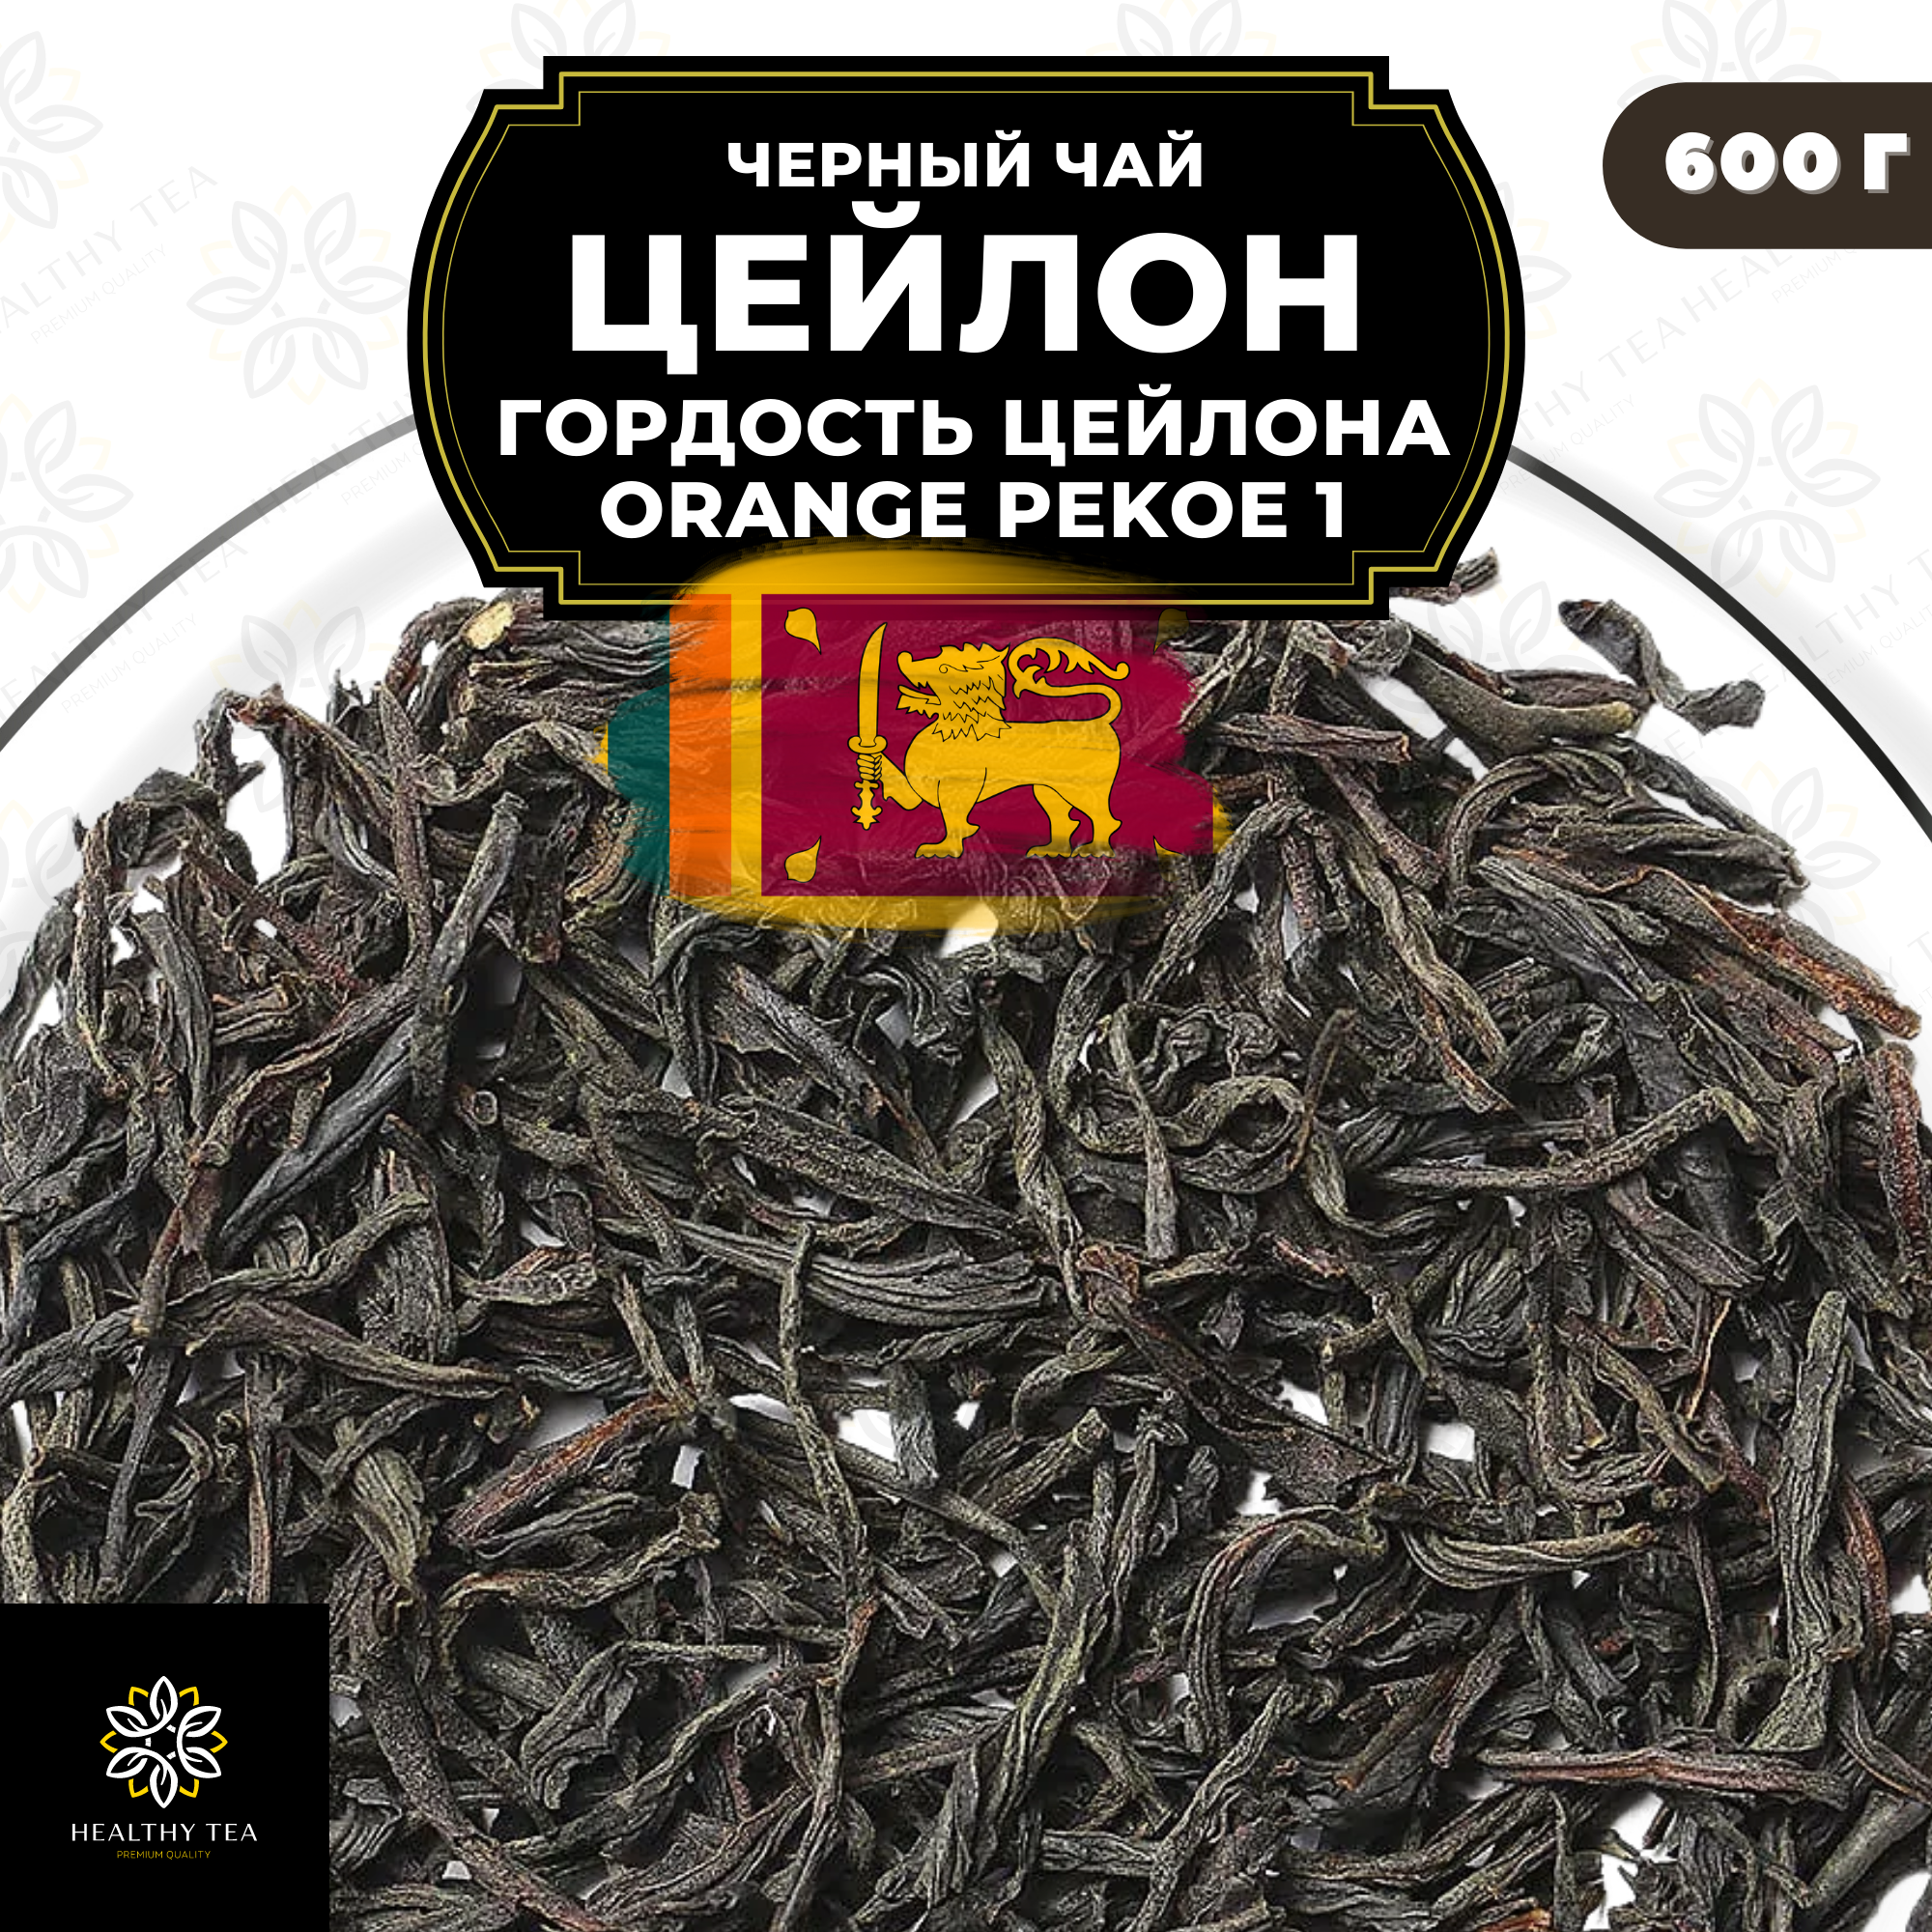 Черный листовой чай Цейлон Гордость Цейлона (ОР1) Полезный чай / HEALTHY TEA, 600 гр